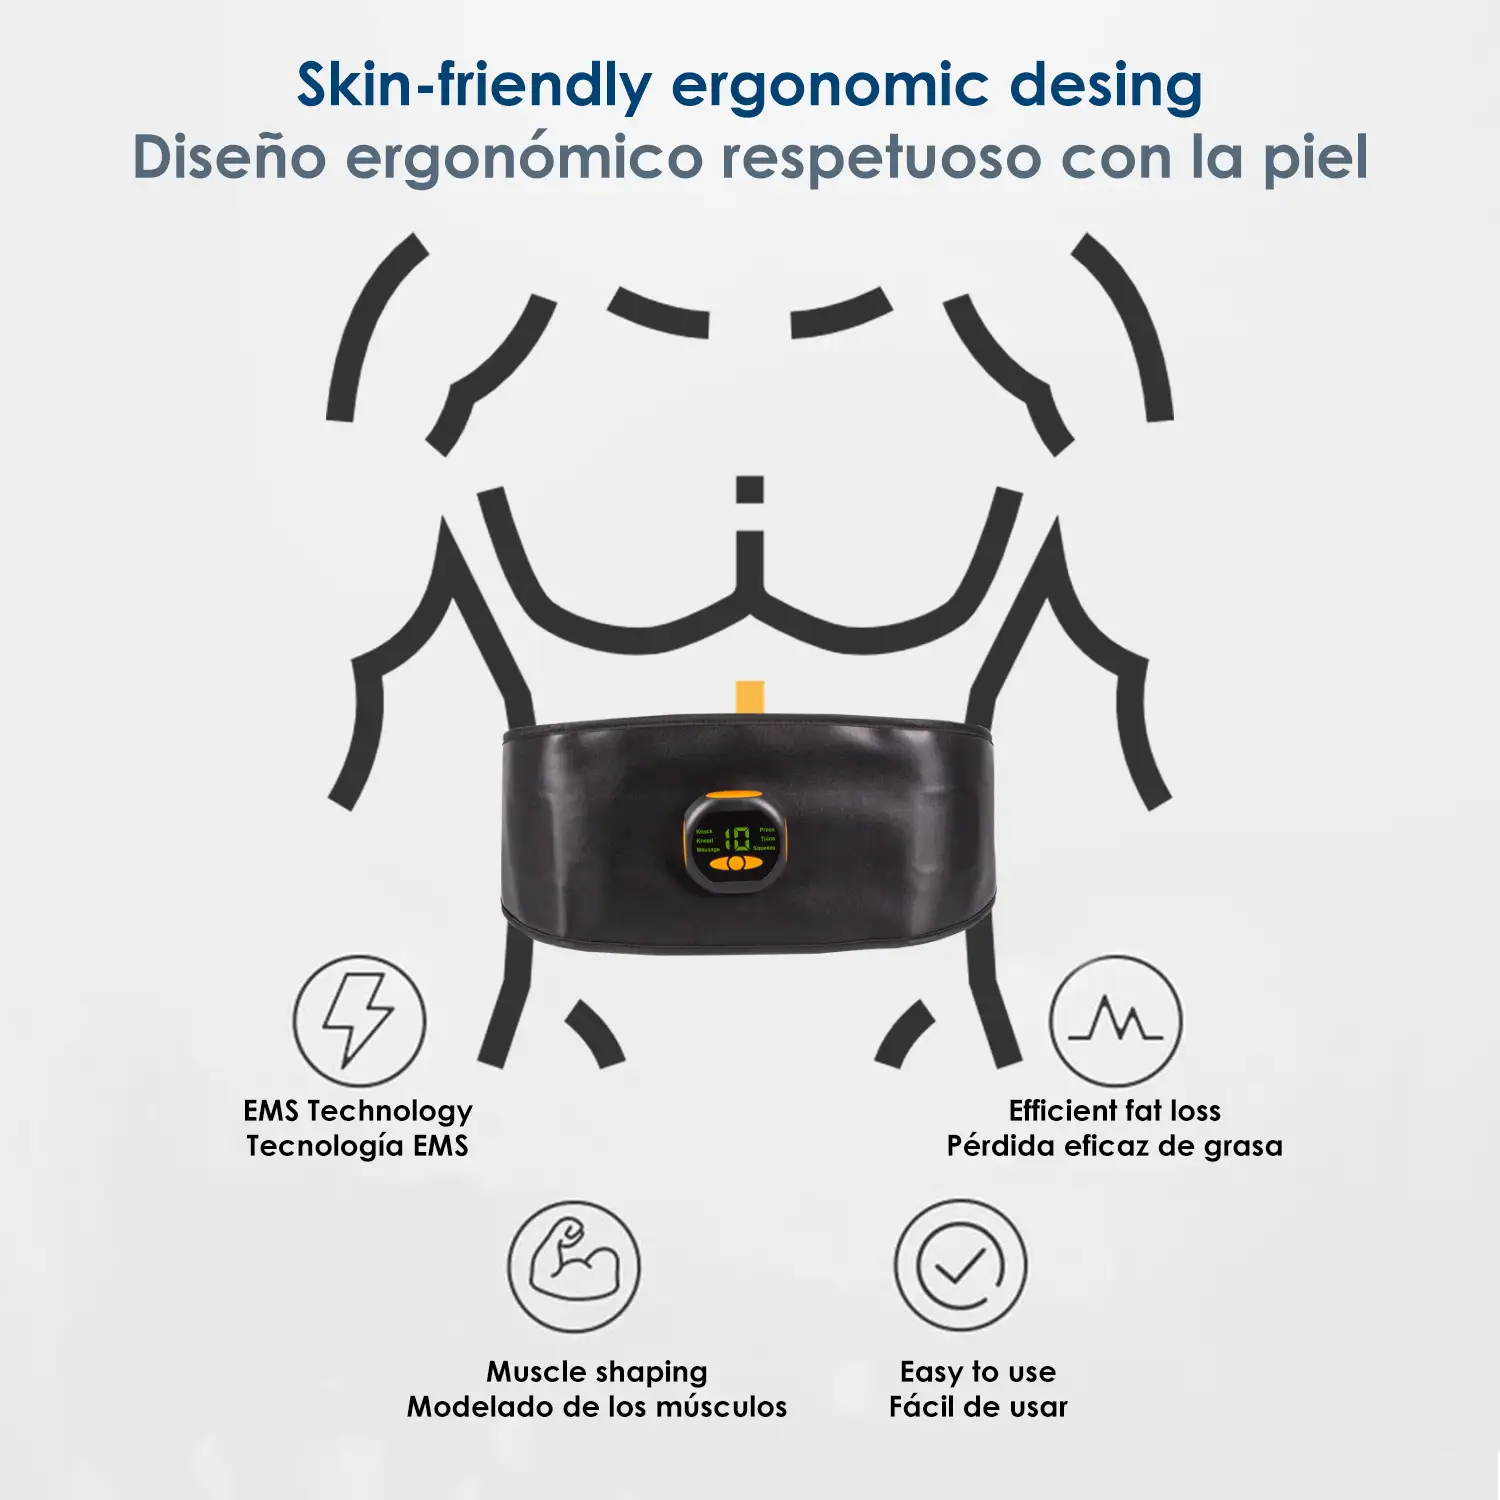 Cinturón estimulador eléctrico de cintura y abdomen EMS Smart Fitness. 15 intensidades, 6 modos. Promueve la circulación sanguínea.